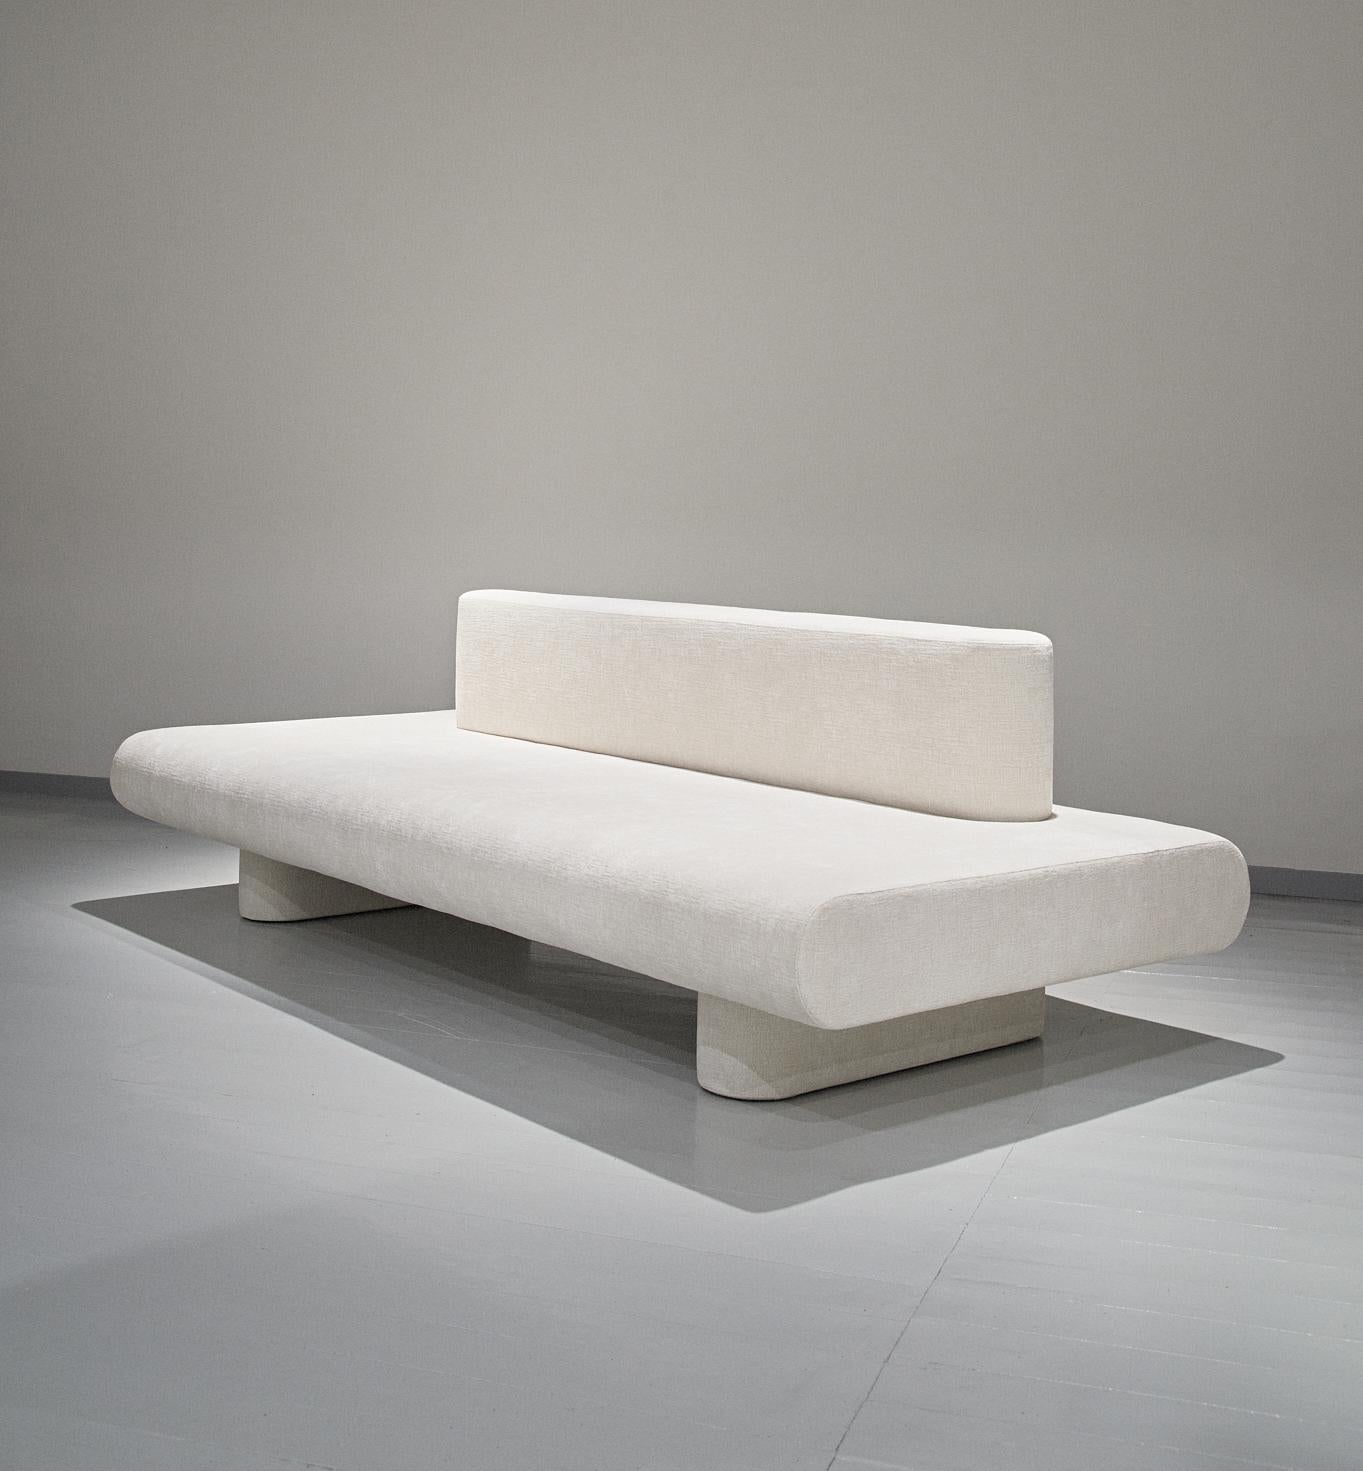 Die neue modulare Kollektion Flowers von Olga Engels besteht aus einem Sofa und modularen Stühlen. Die Stühle können auf vielfältige Weise miteinander verbunden werden. Flowers ist eine Anspielung auf die Komposition einfacher weißer Feldblumen. Ein